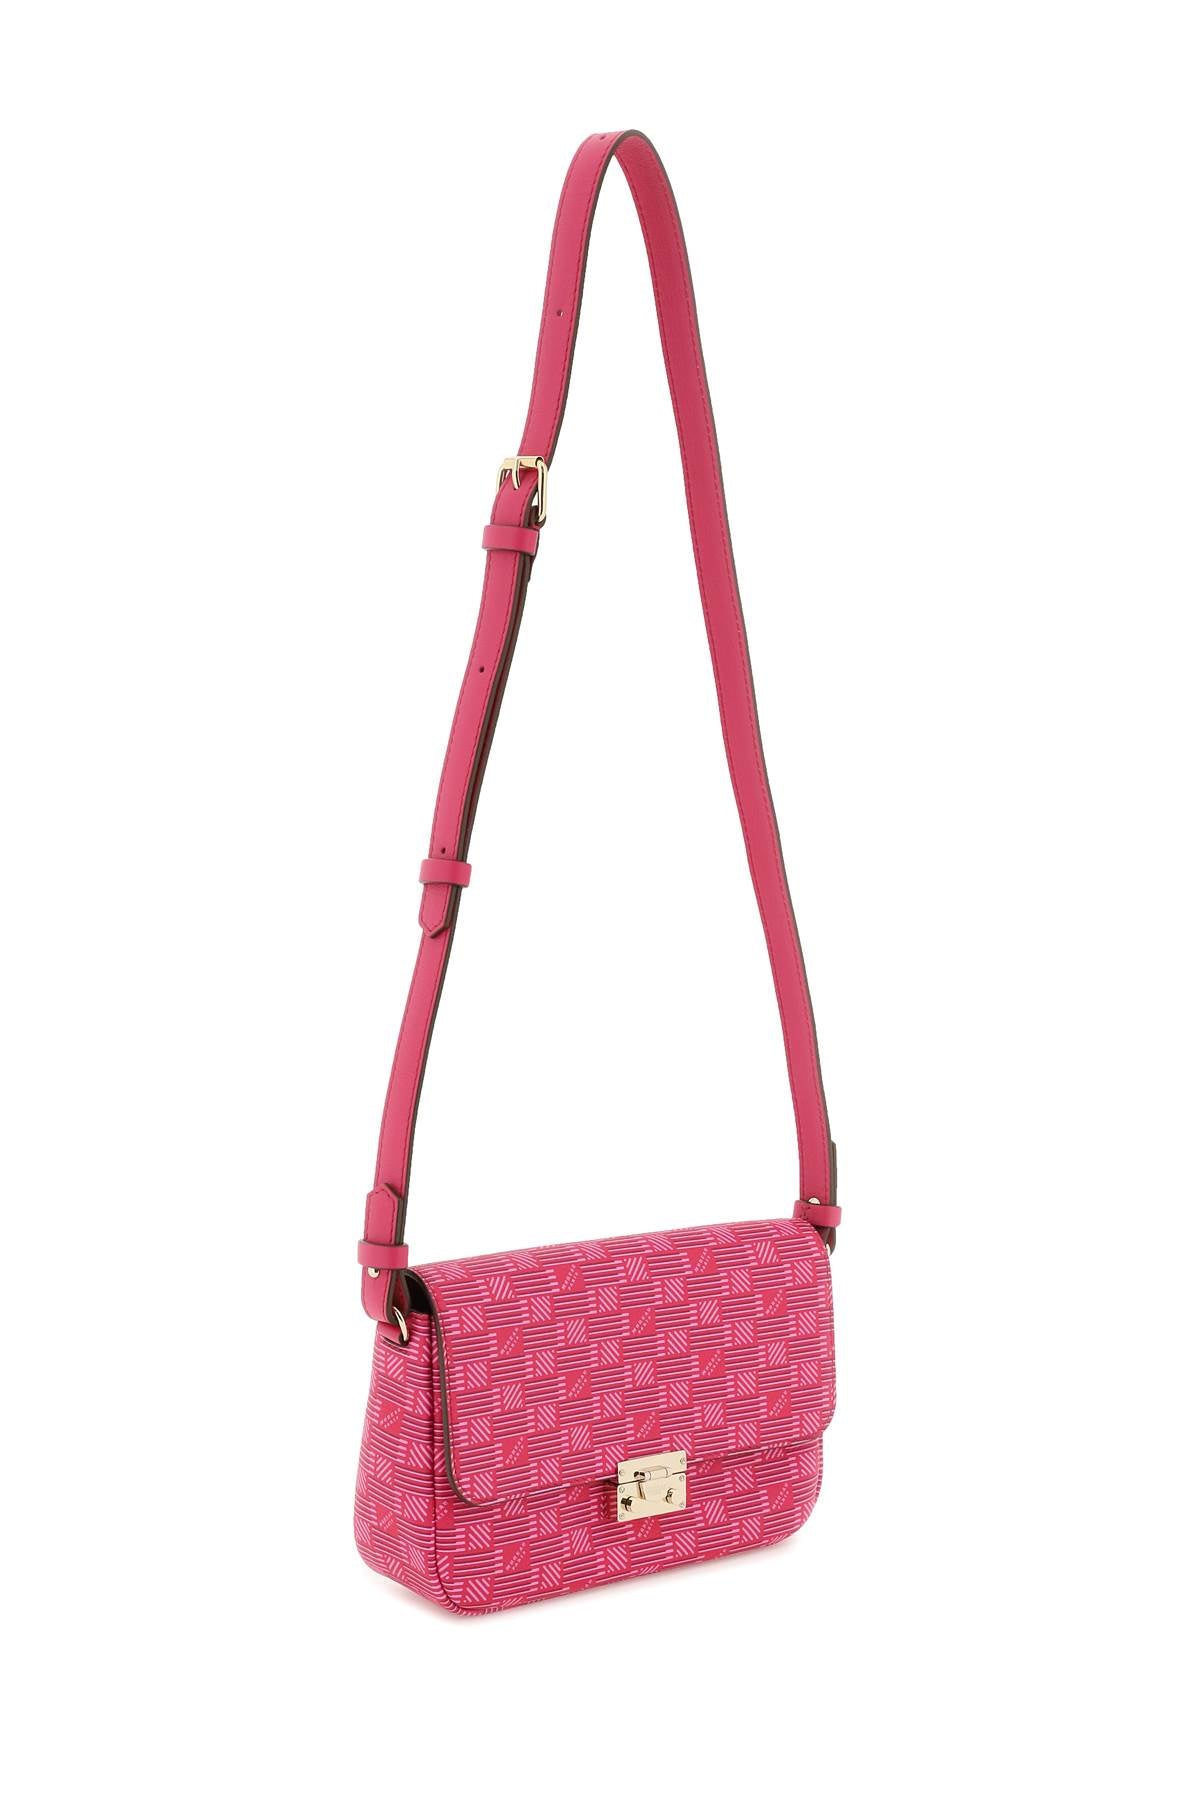 Crossbody Handbag جانبية لون زهري للنساء - مجموعة مواريس الربيع والصيف 23